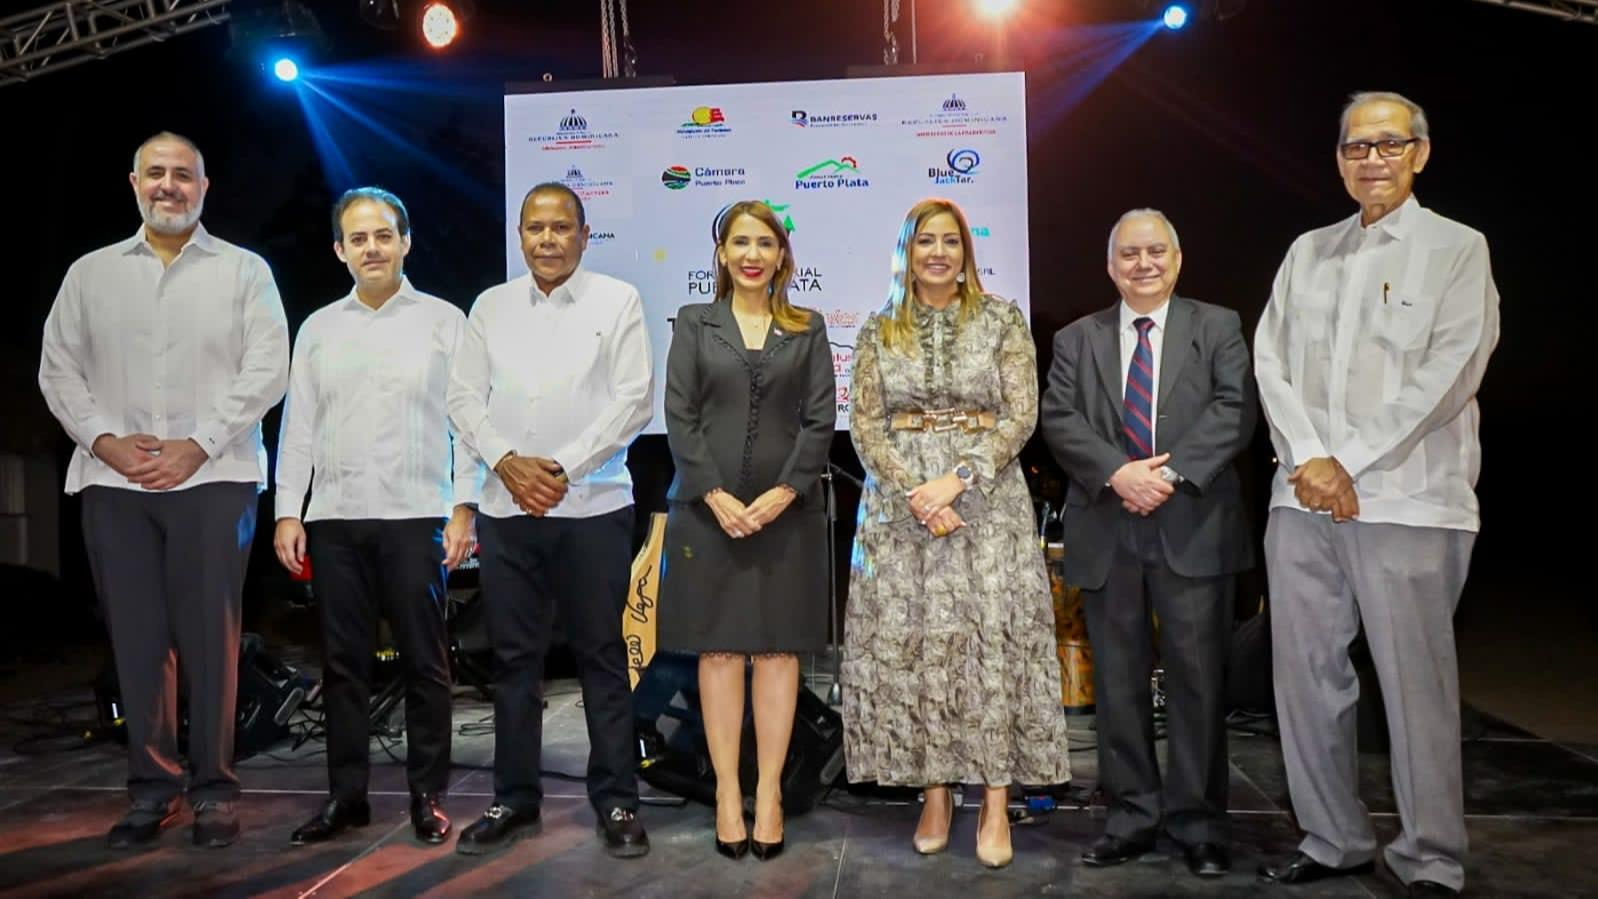 Inicia Foro Empresarial para impulsar la inversión en Puerto Plata   